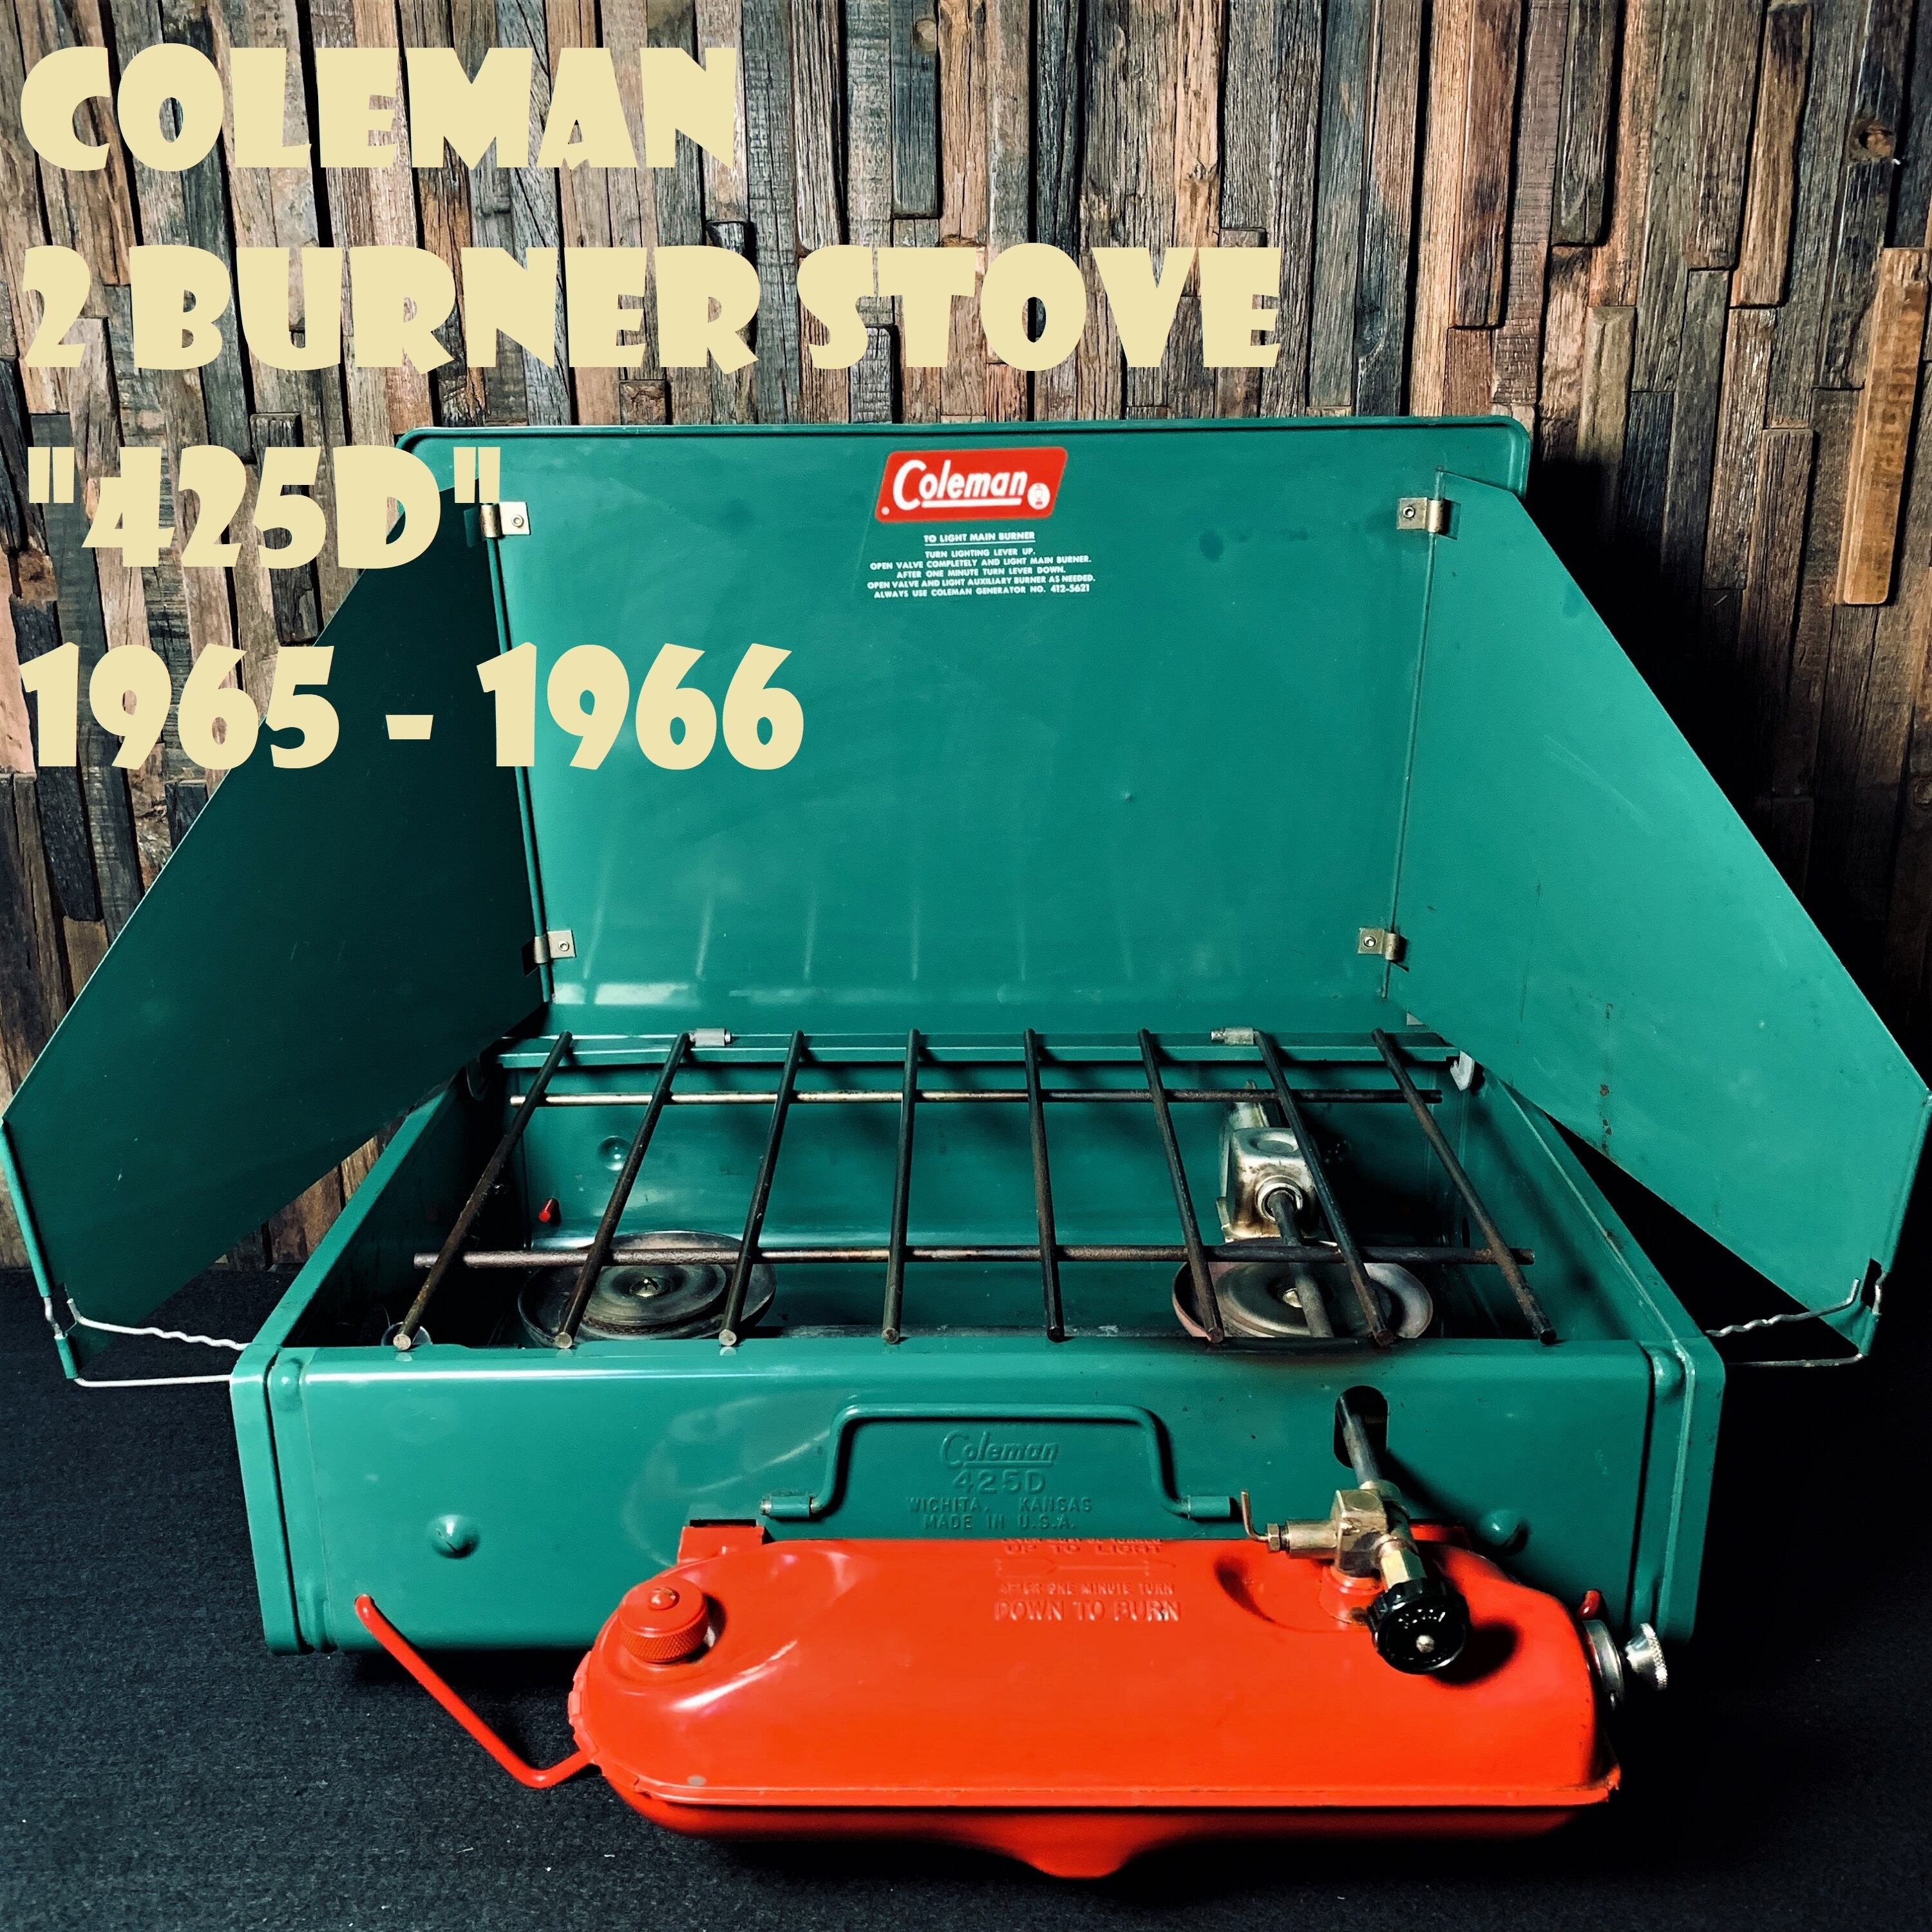 コールマン 425D ツーバーナー 赤脚 赤足 コンパクト ビンテージ ストーブ 60年代 2バーナー COLEMAN 美品  製造2年間のみの希少モデル | スーパービンテージデポ【Super Vintage Depot】